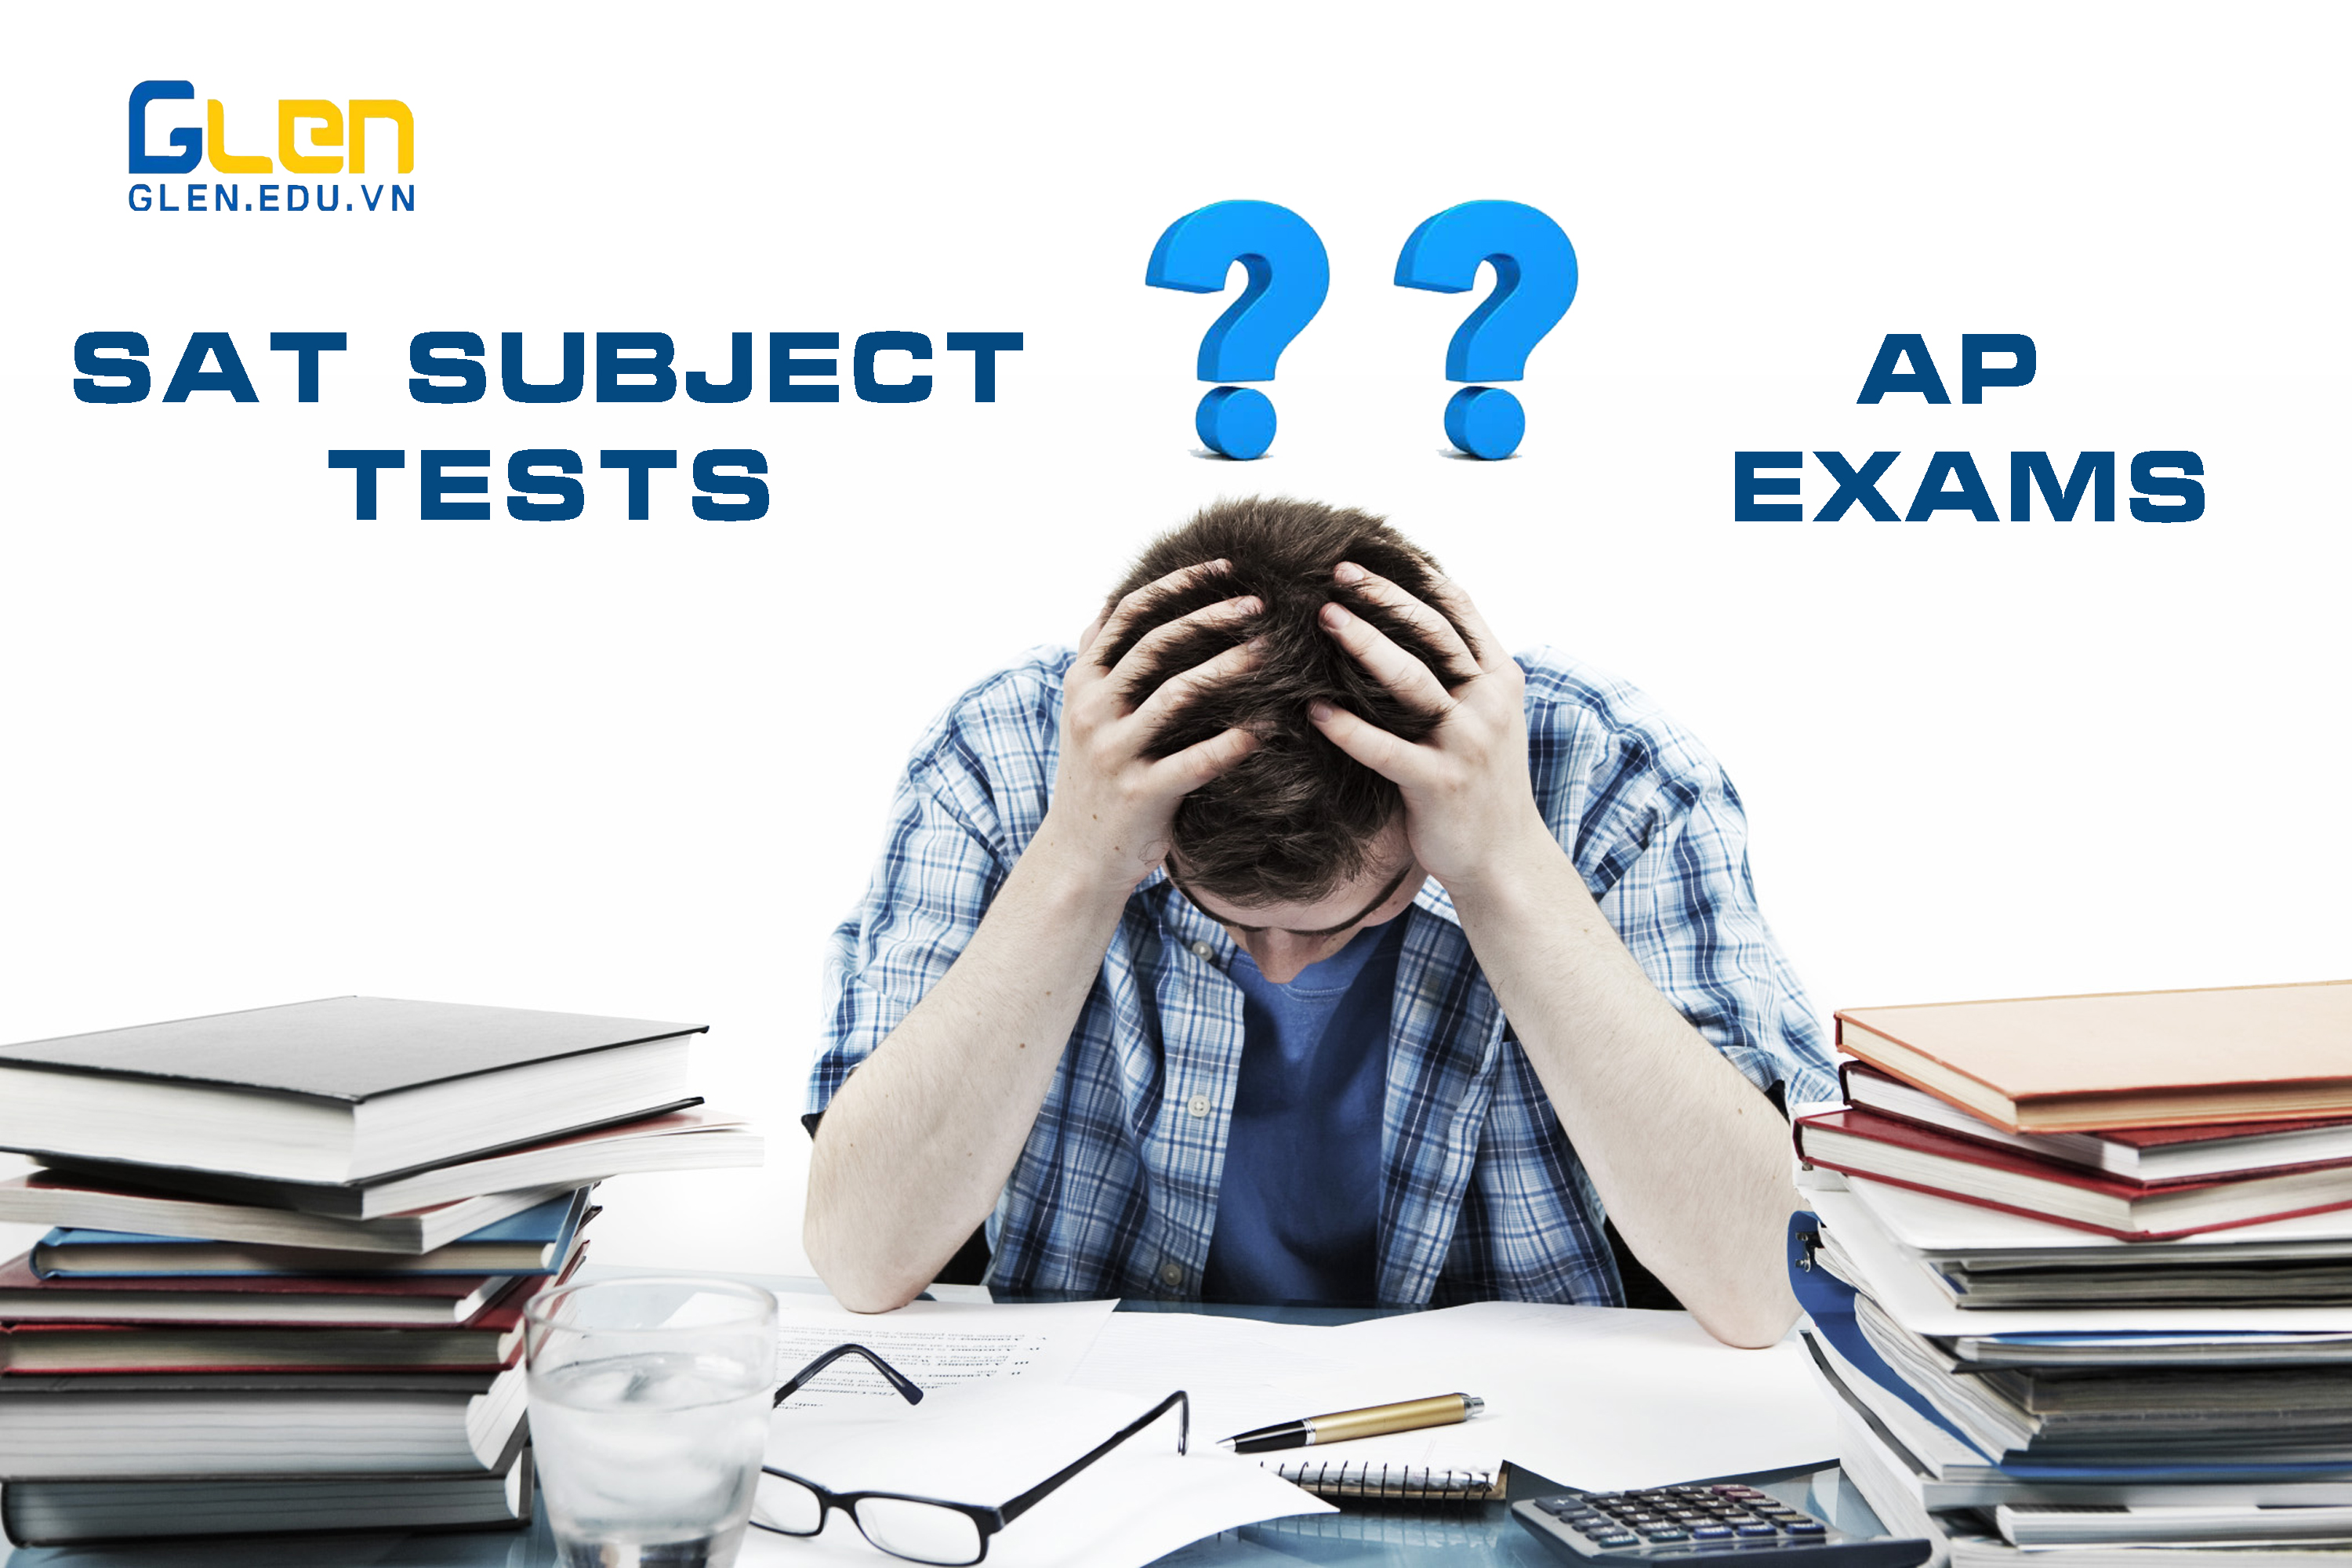 Nên chọn thi AP Exams hay SAT Subject Tests?